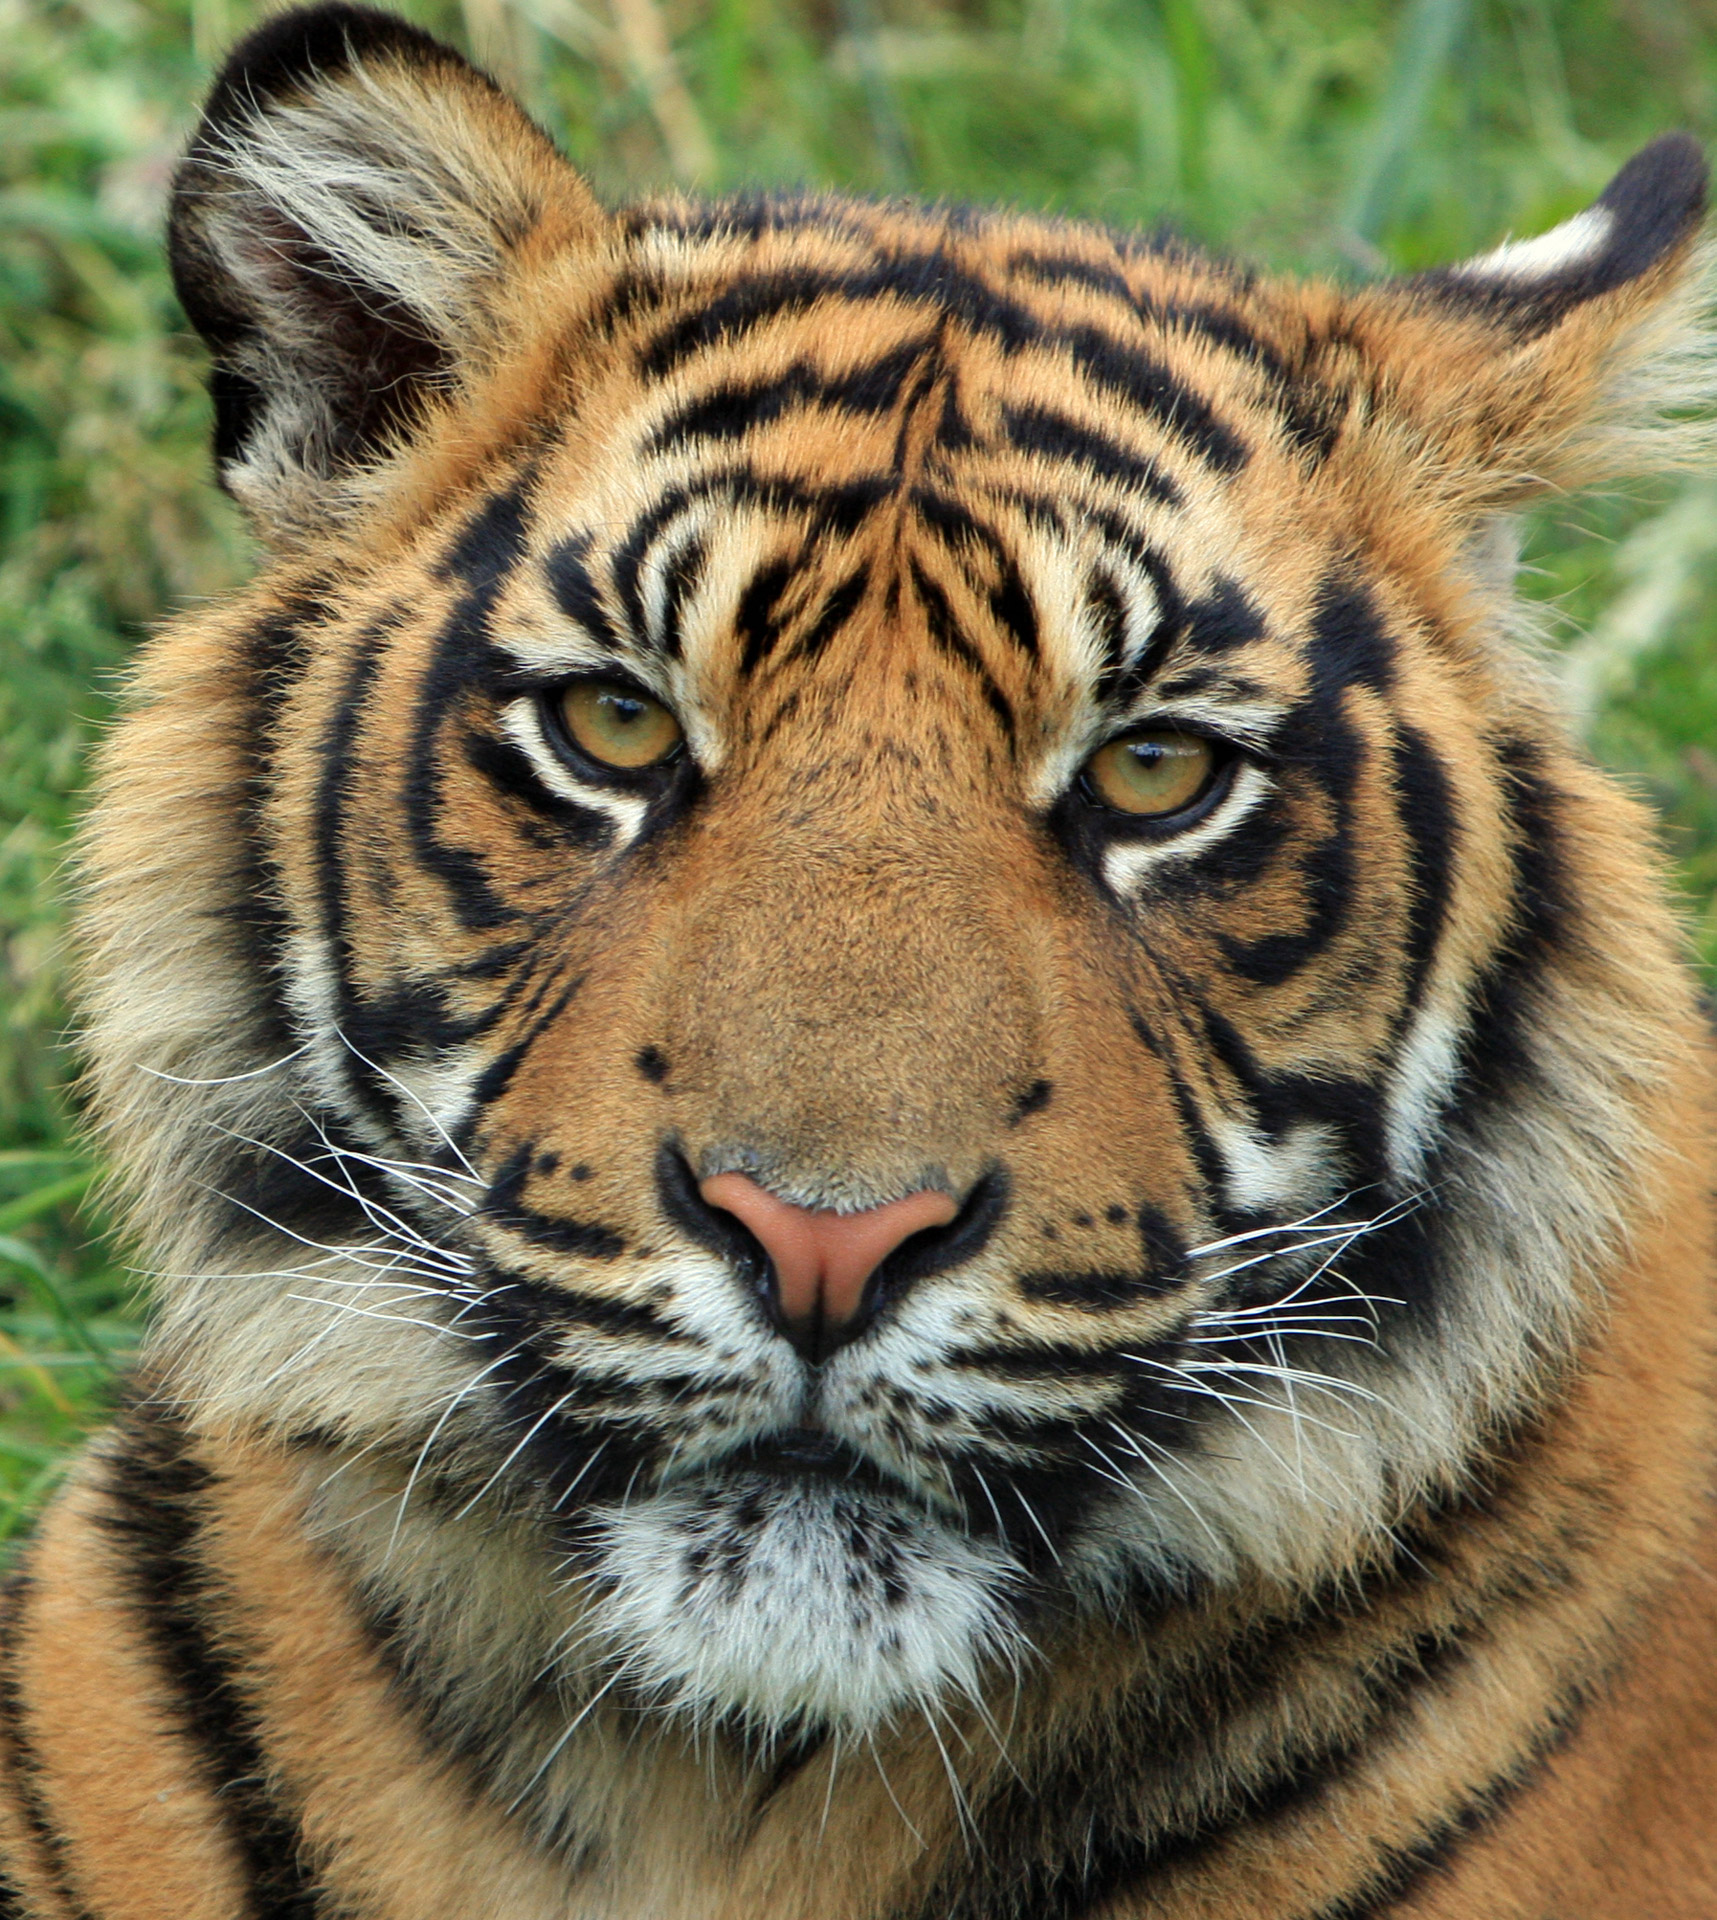 Close-up portrait of a young sumatran tiger cub head